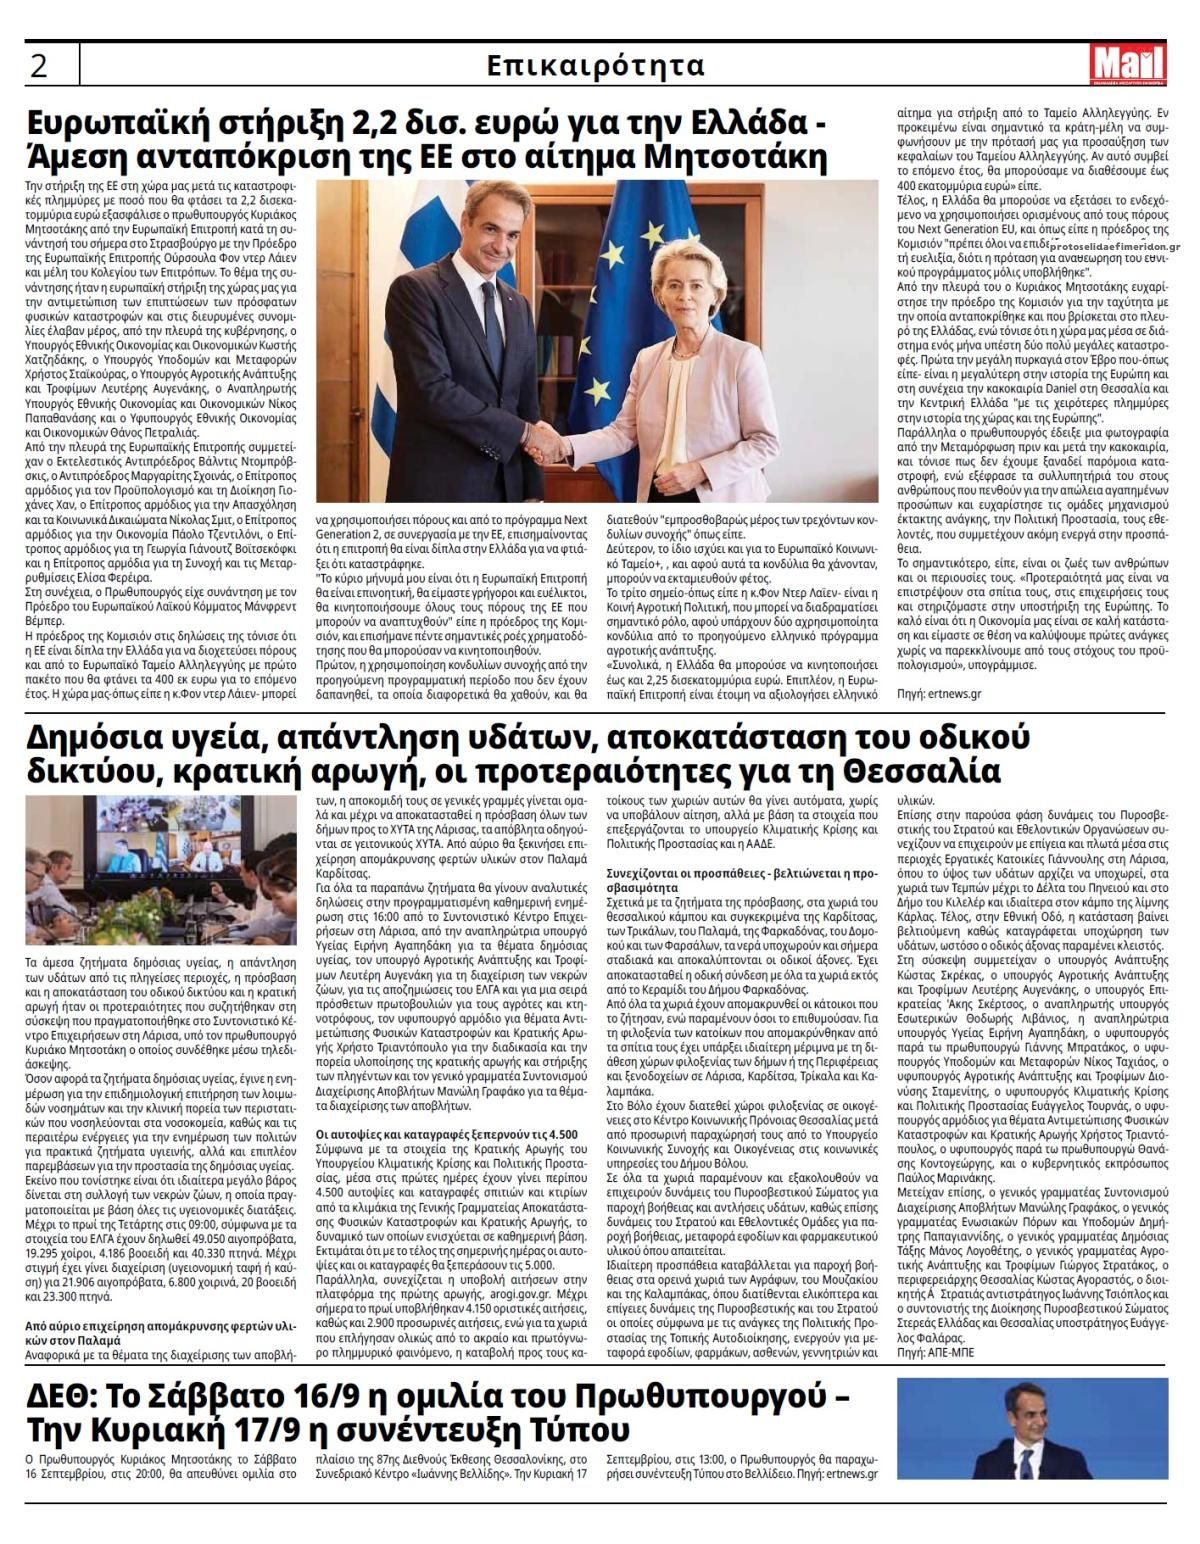 Οπισθόφυλλο εφημερίδας Hellenic Mail